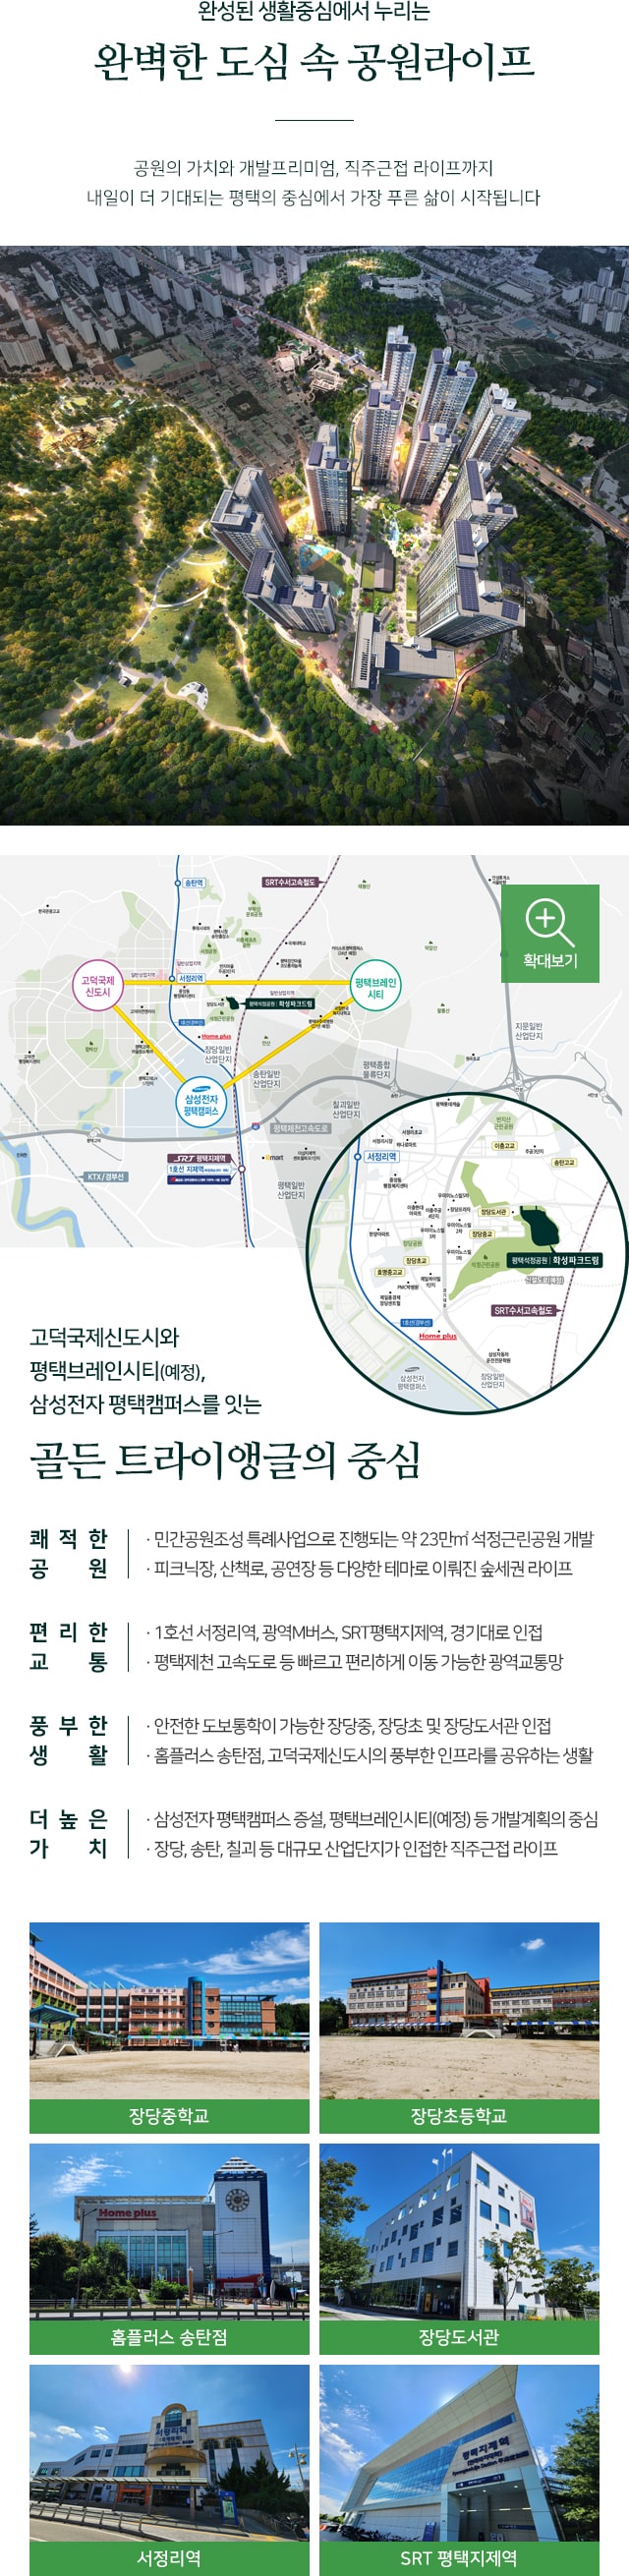 평택석정공원 화성파크드림_m_location